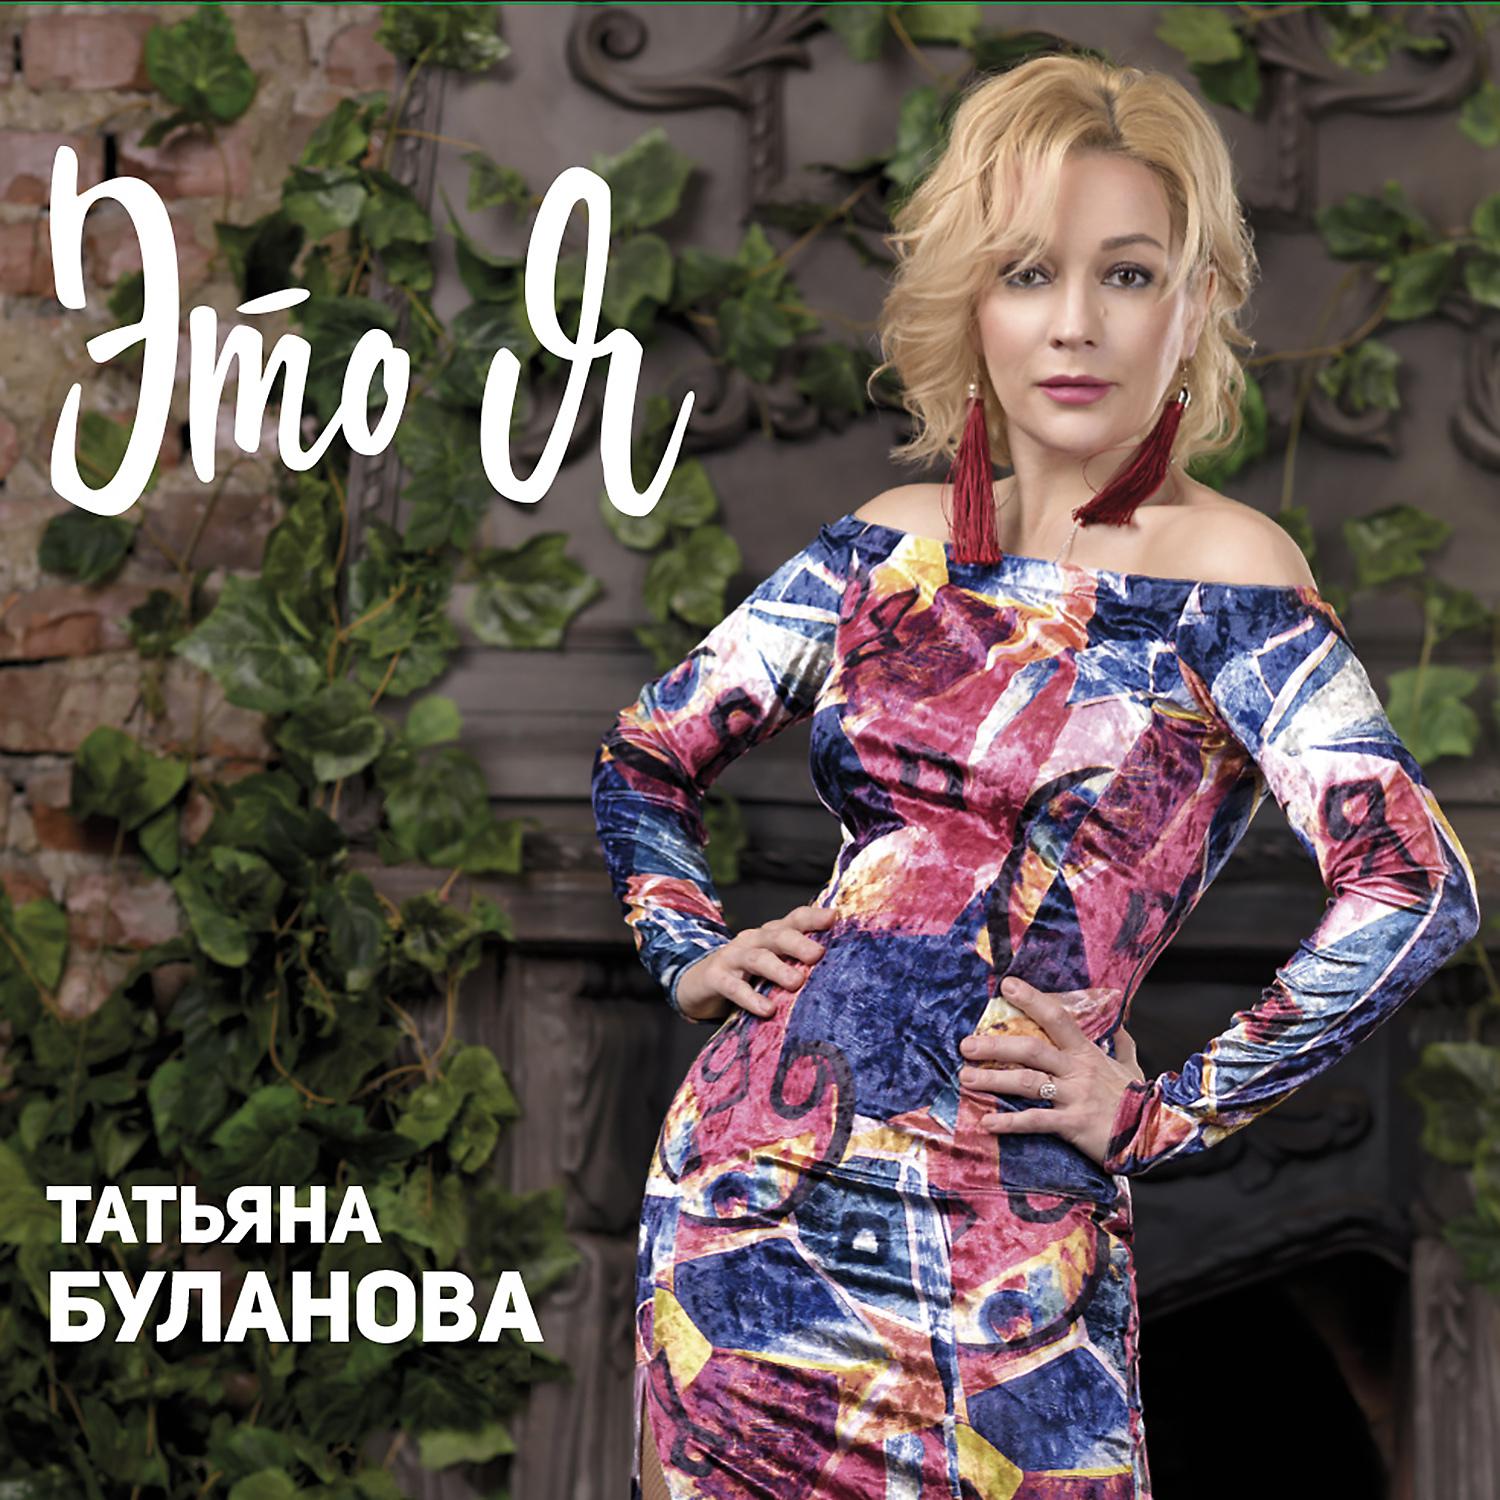 Альбом Это я - Татьяна Буланова - слушать все треки онлайн на Zvuk.com